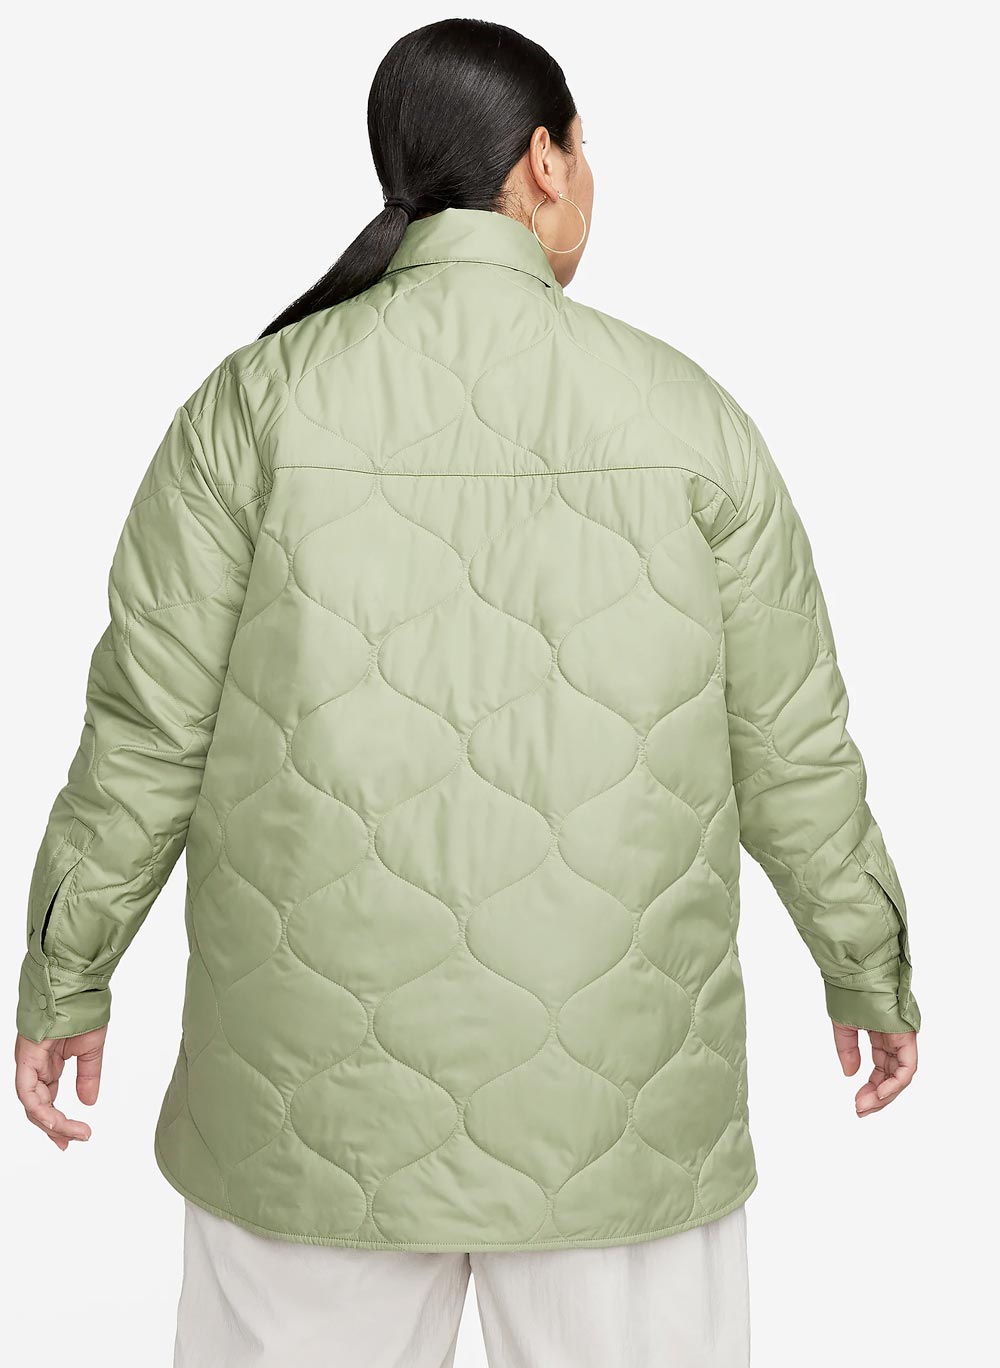 Nike Quilt Jacket